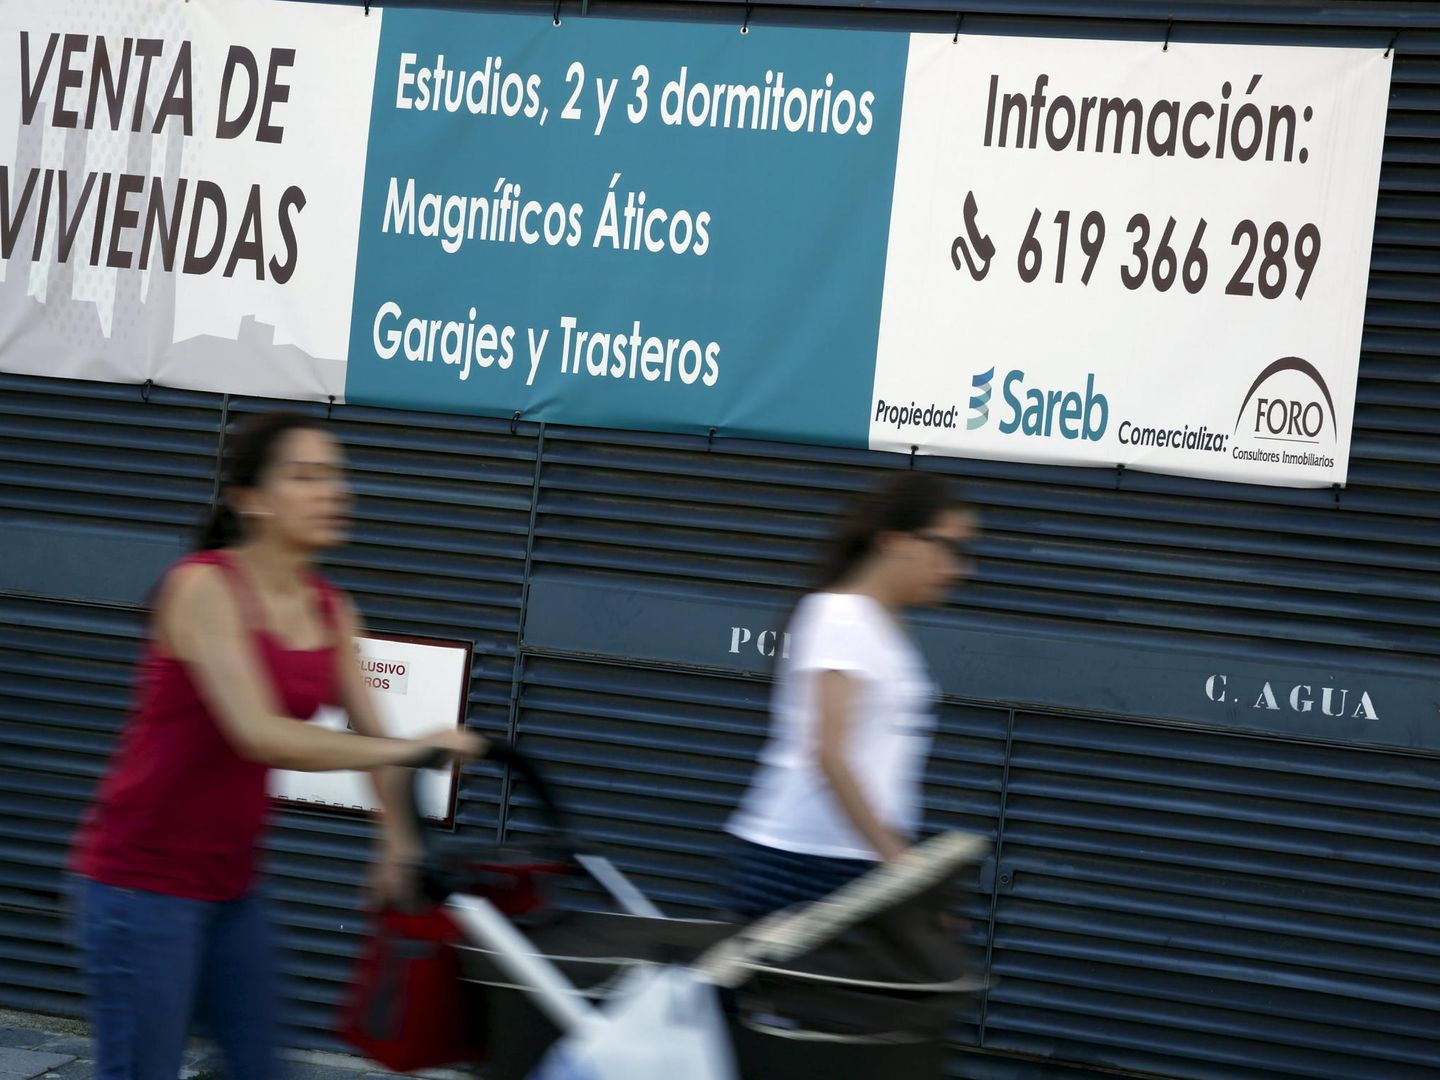 Apartamentos en venta de Sareb en Madrid. (Reuters)